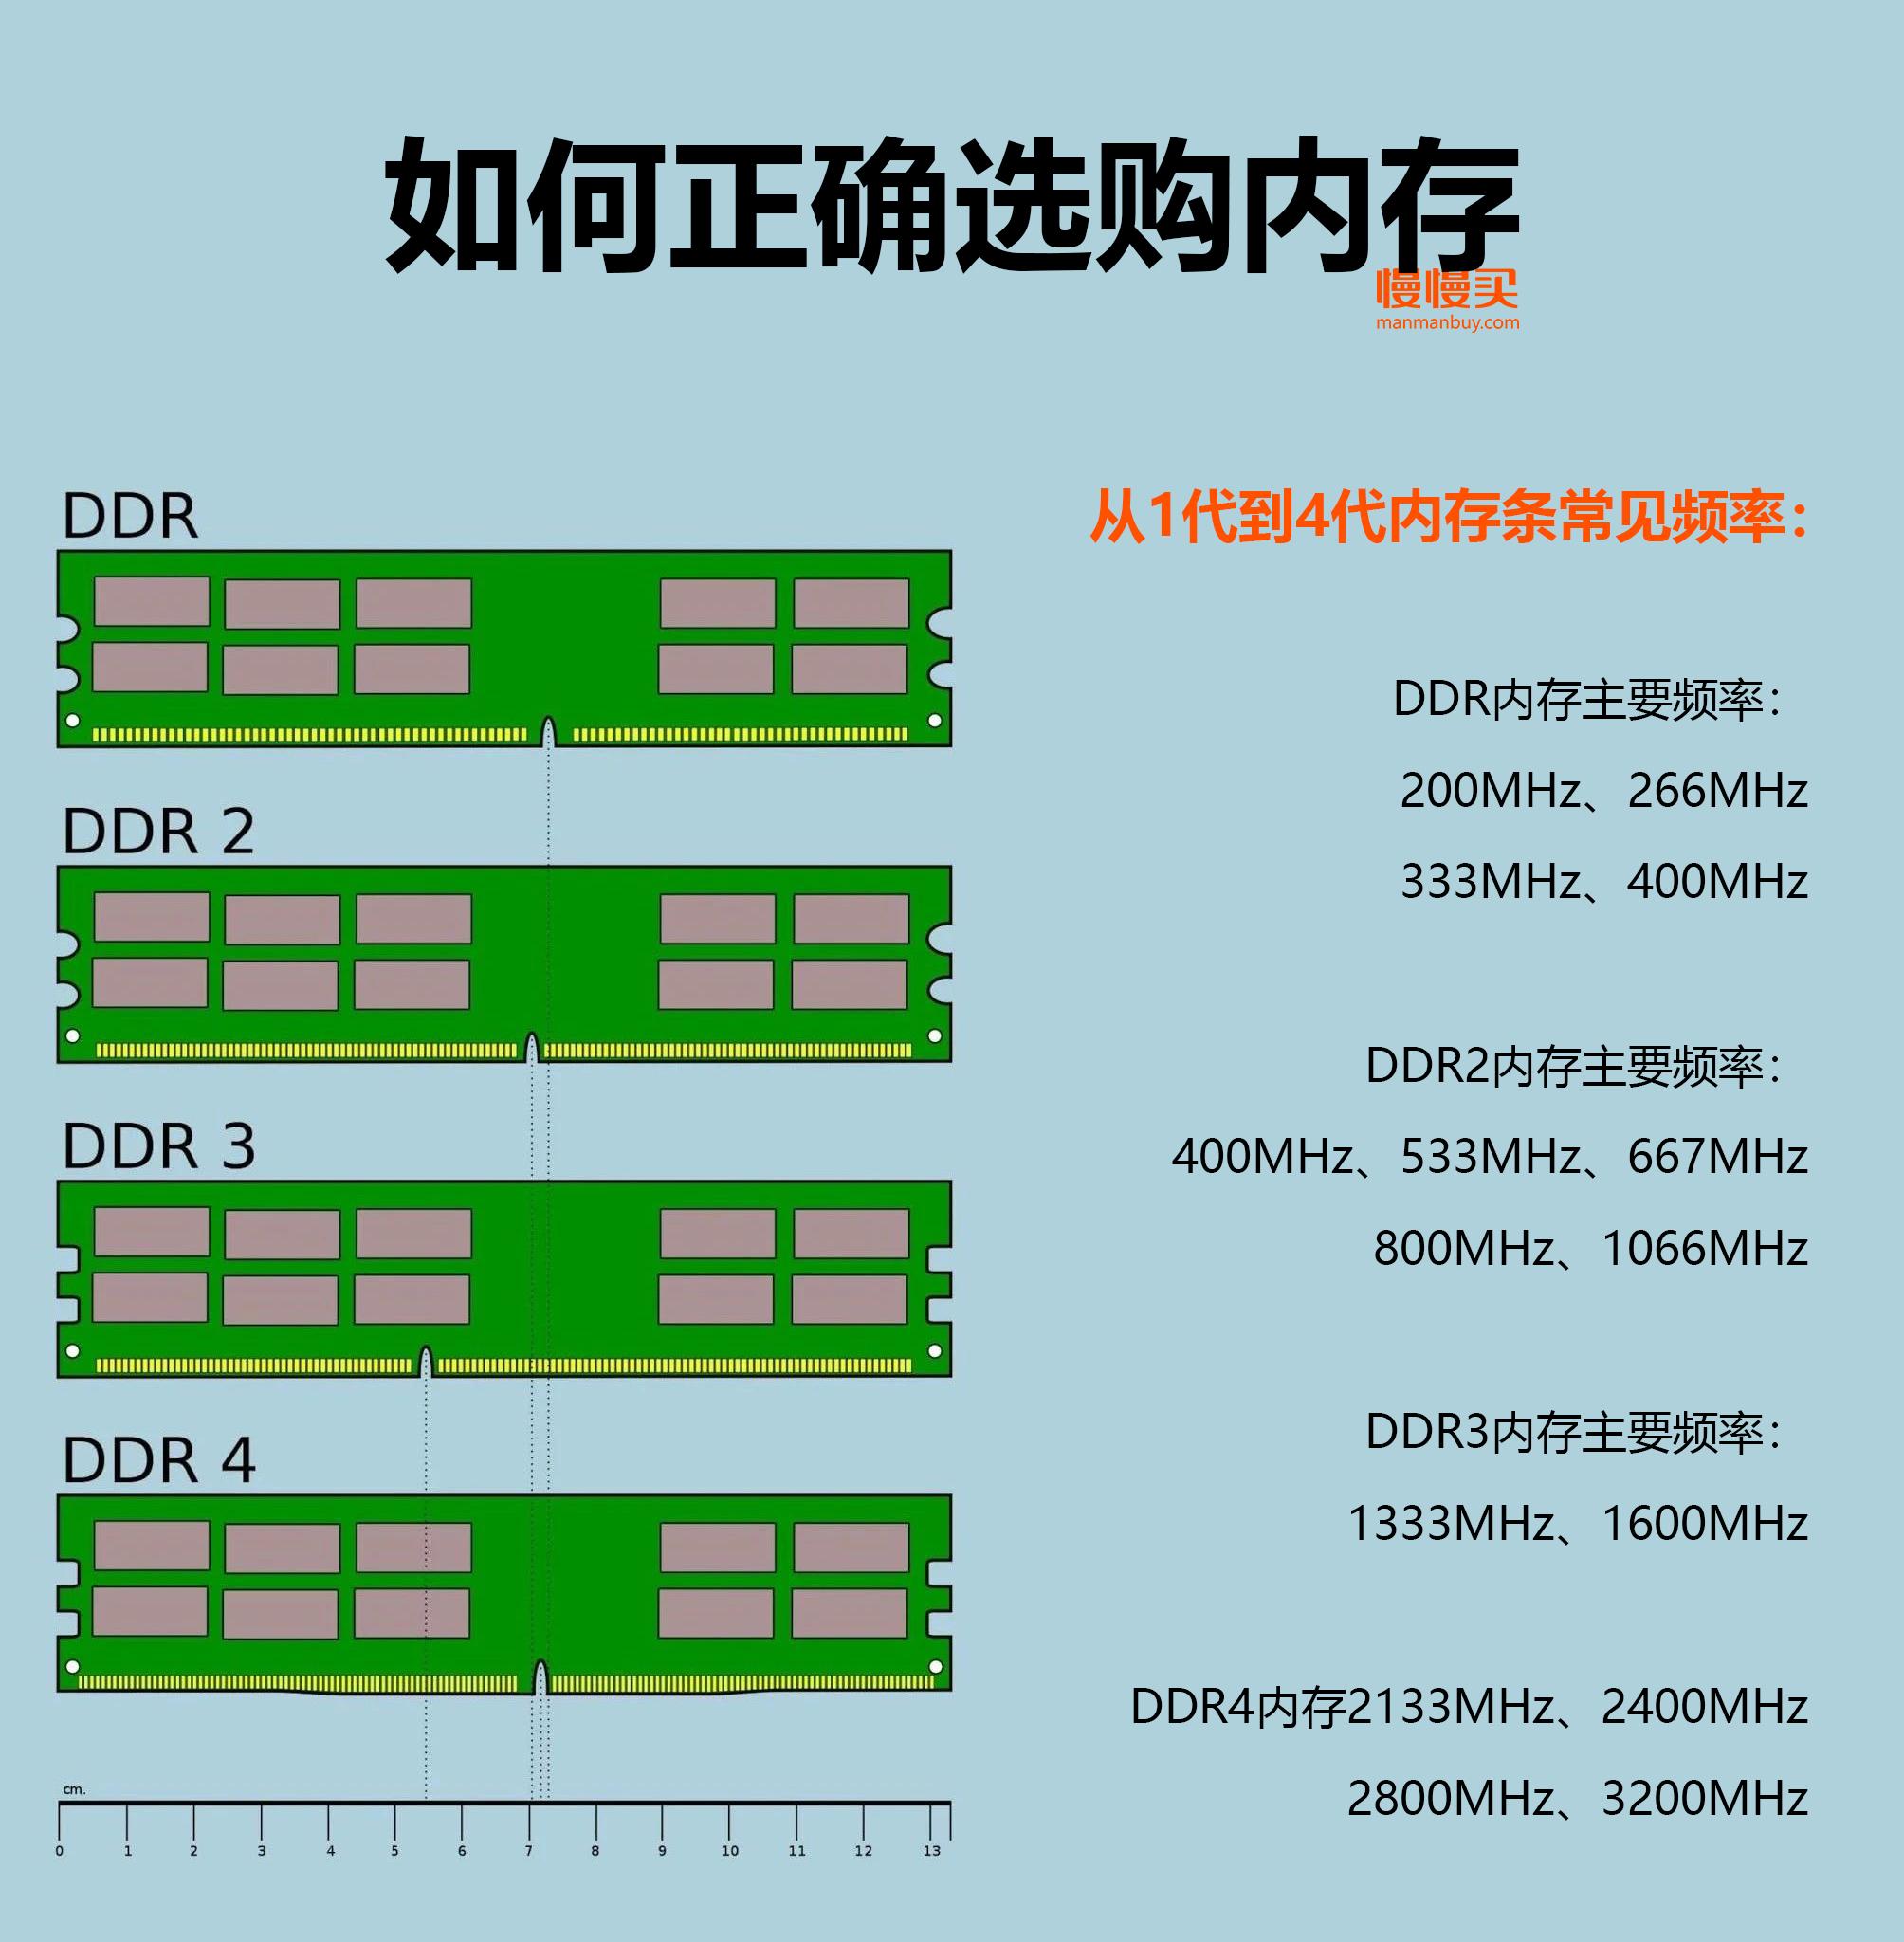 解析初代 DDR4 内存延迟现象：为何电脑会卡顿？DDR4 与 DDR3 延迟对比  第1张